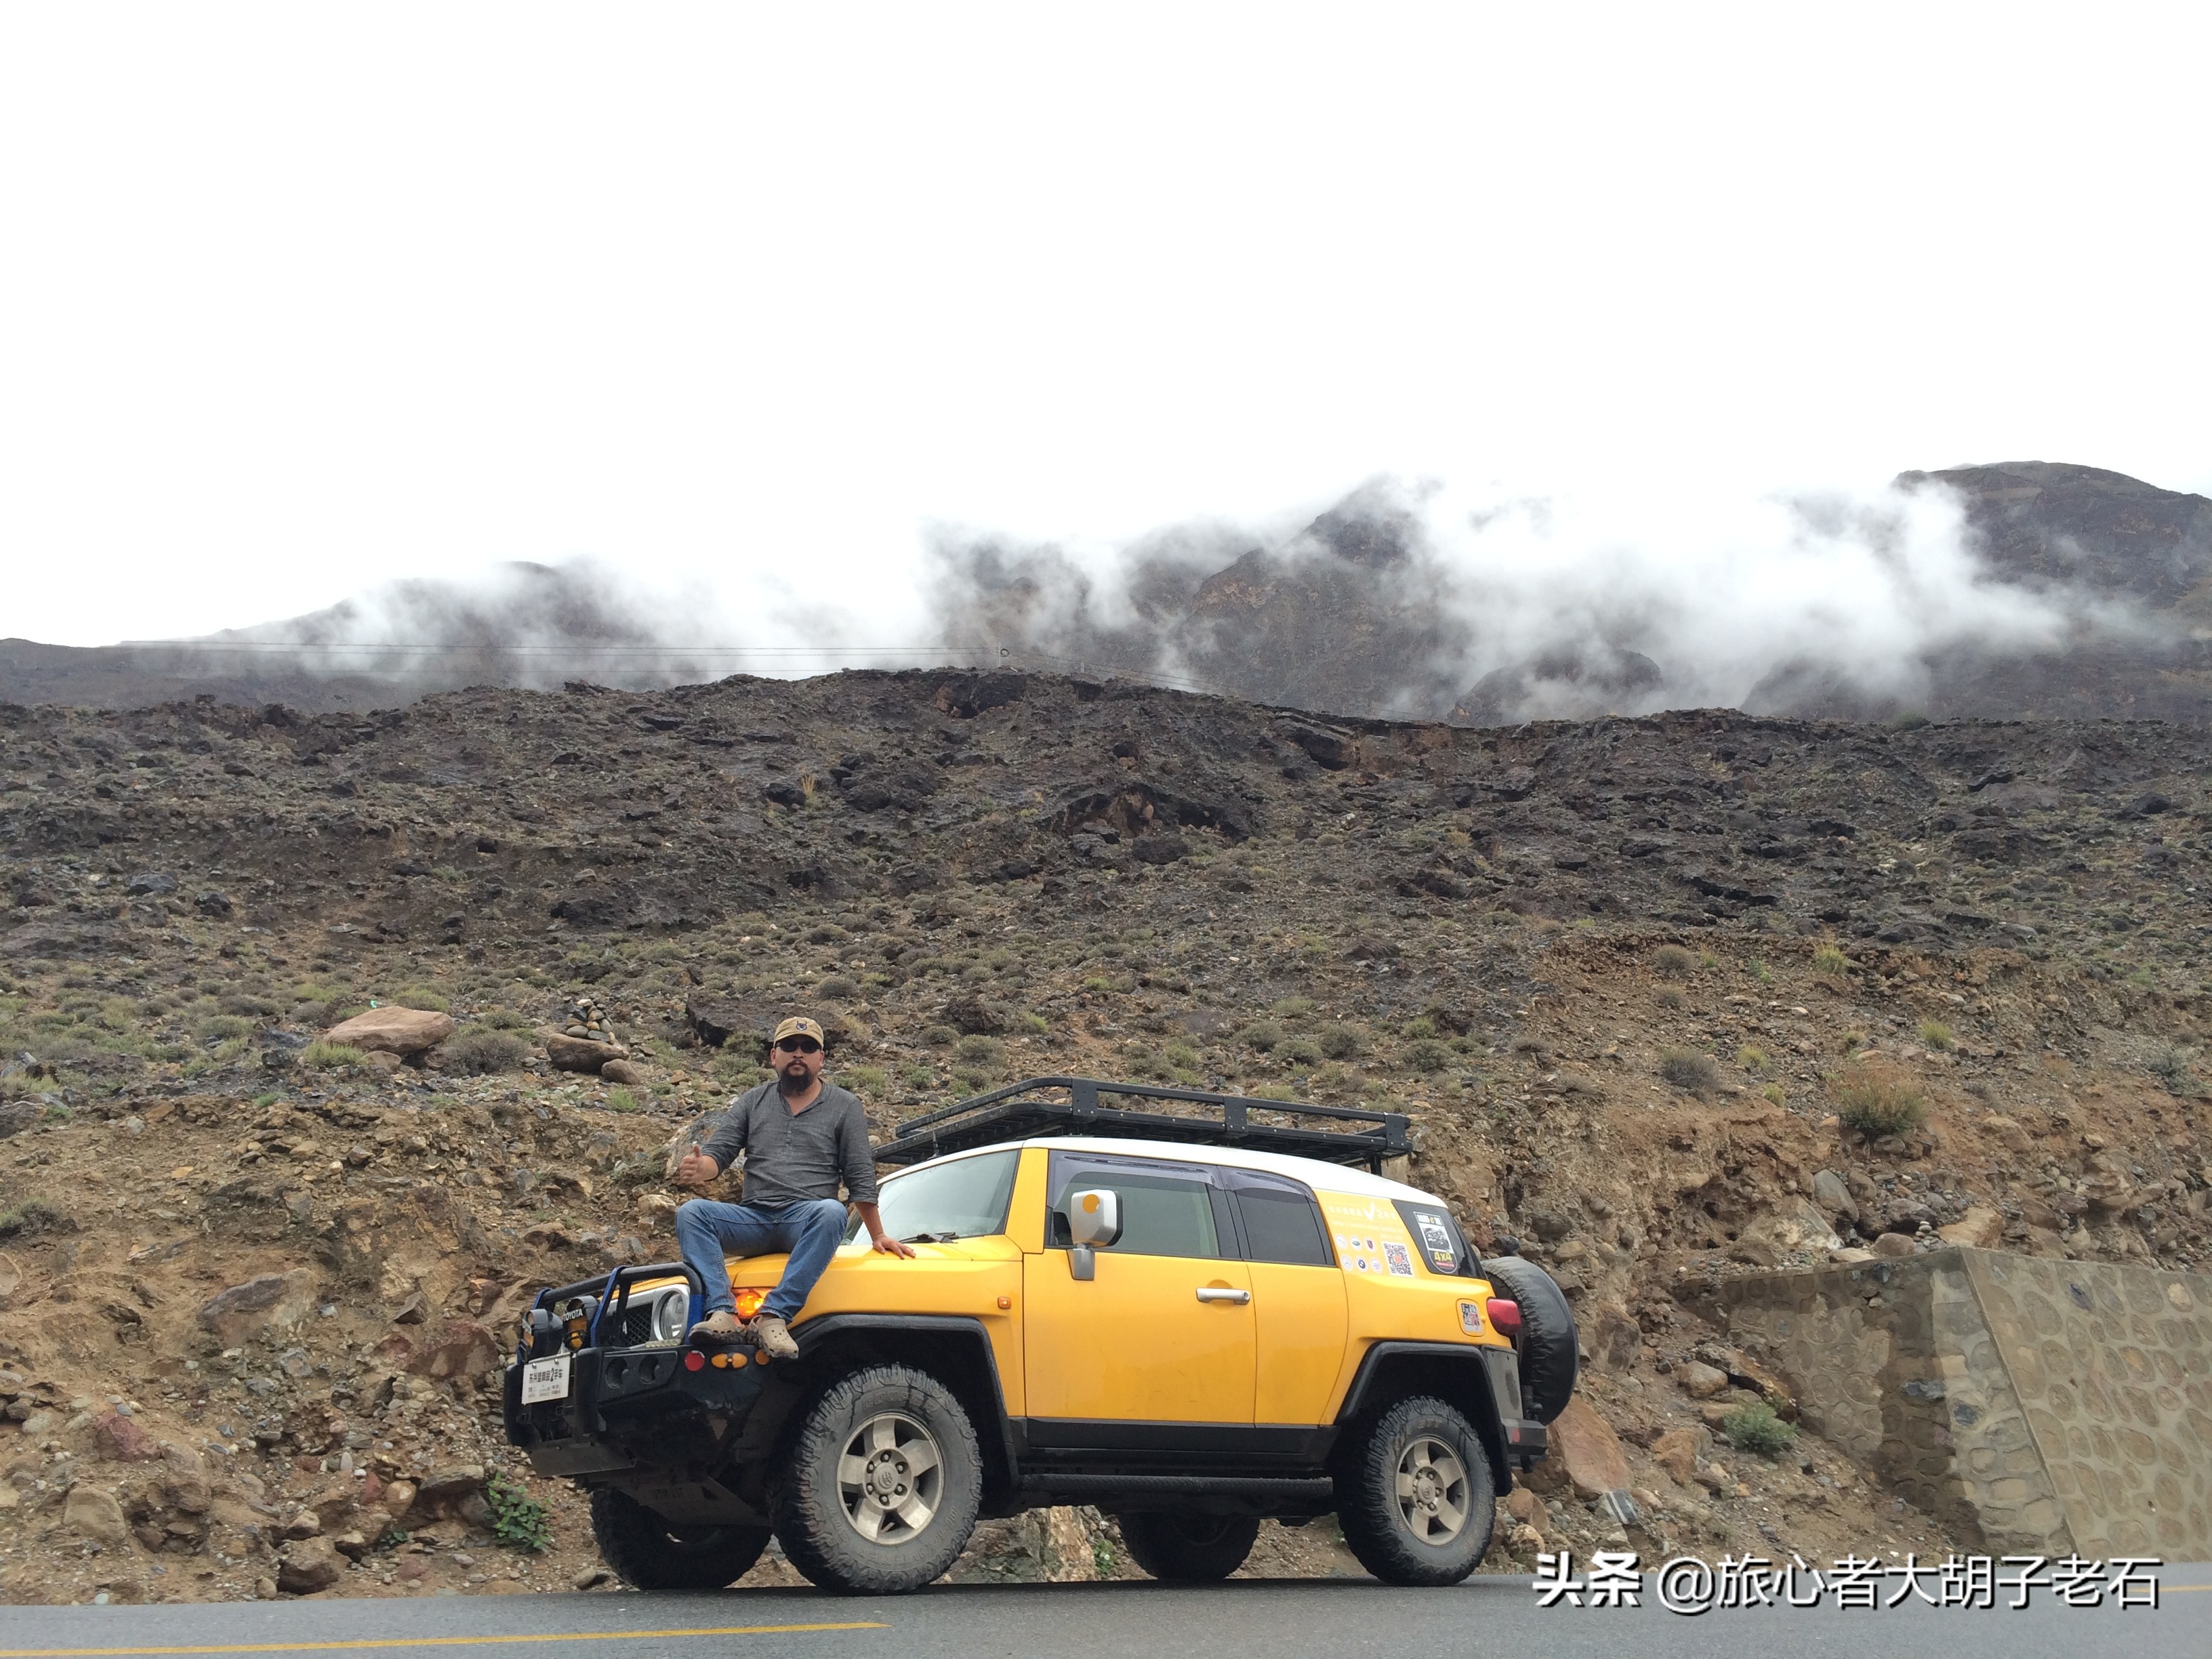 川西、新疆、西藏自驾游车辆准备及特别注意事项